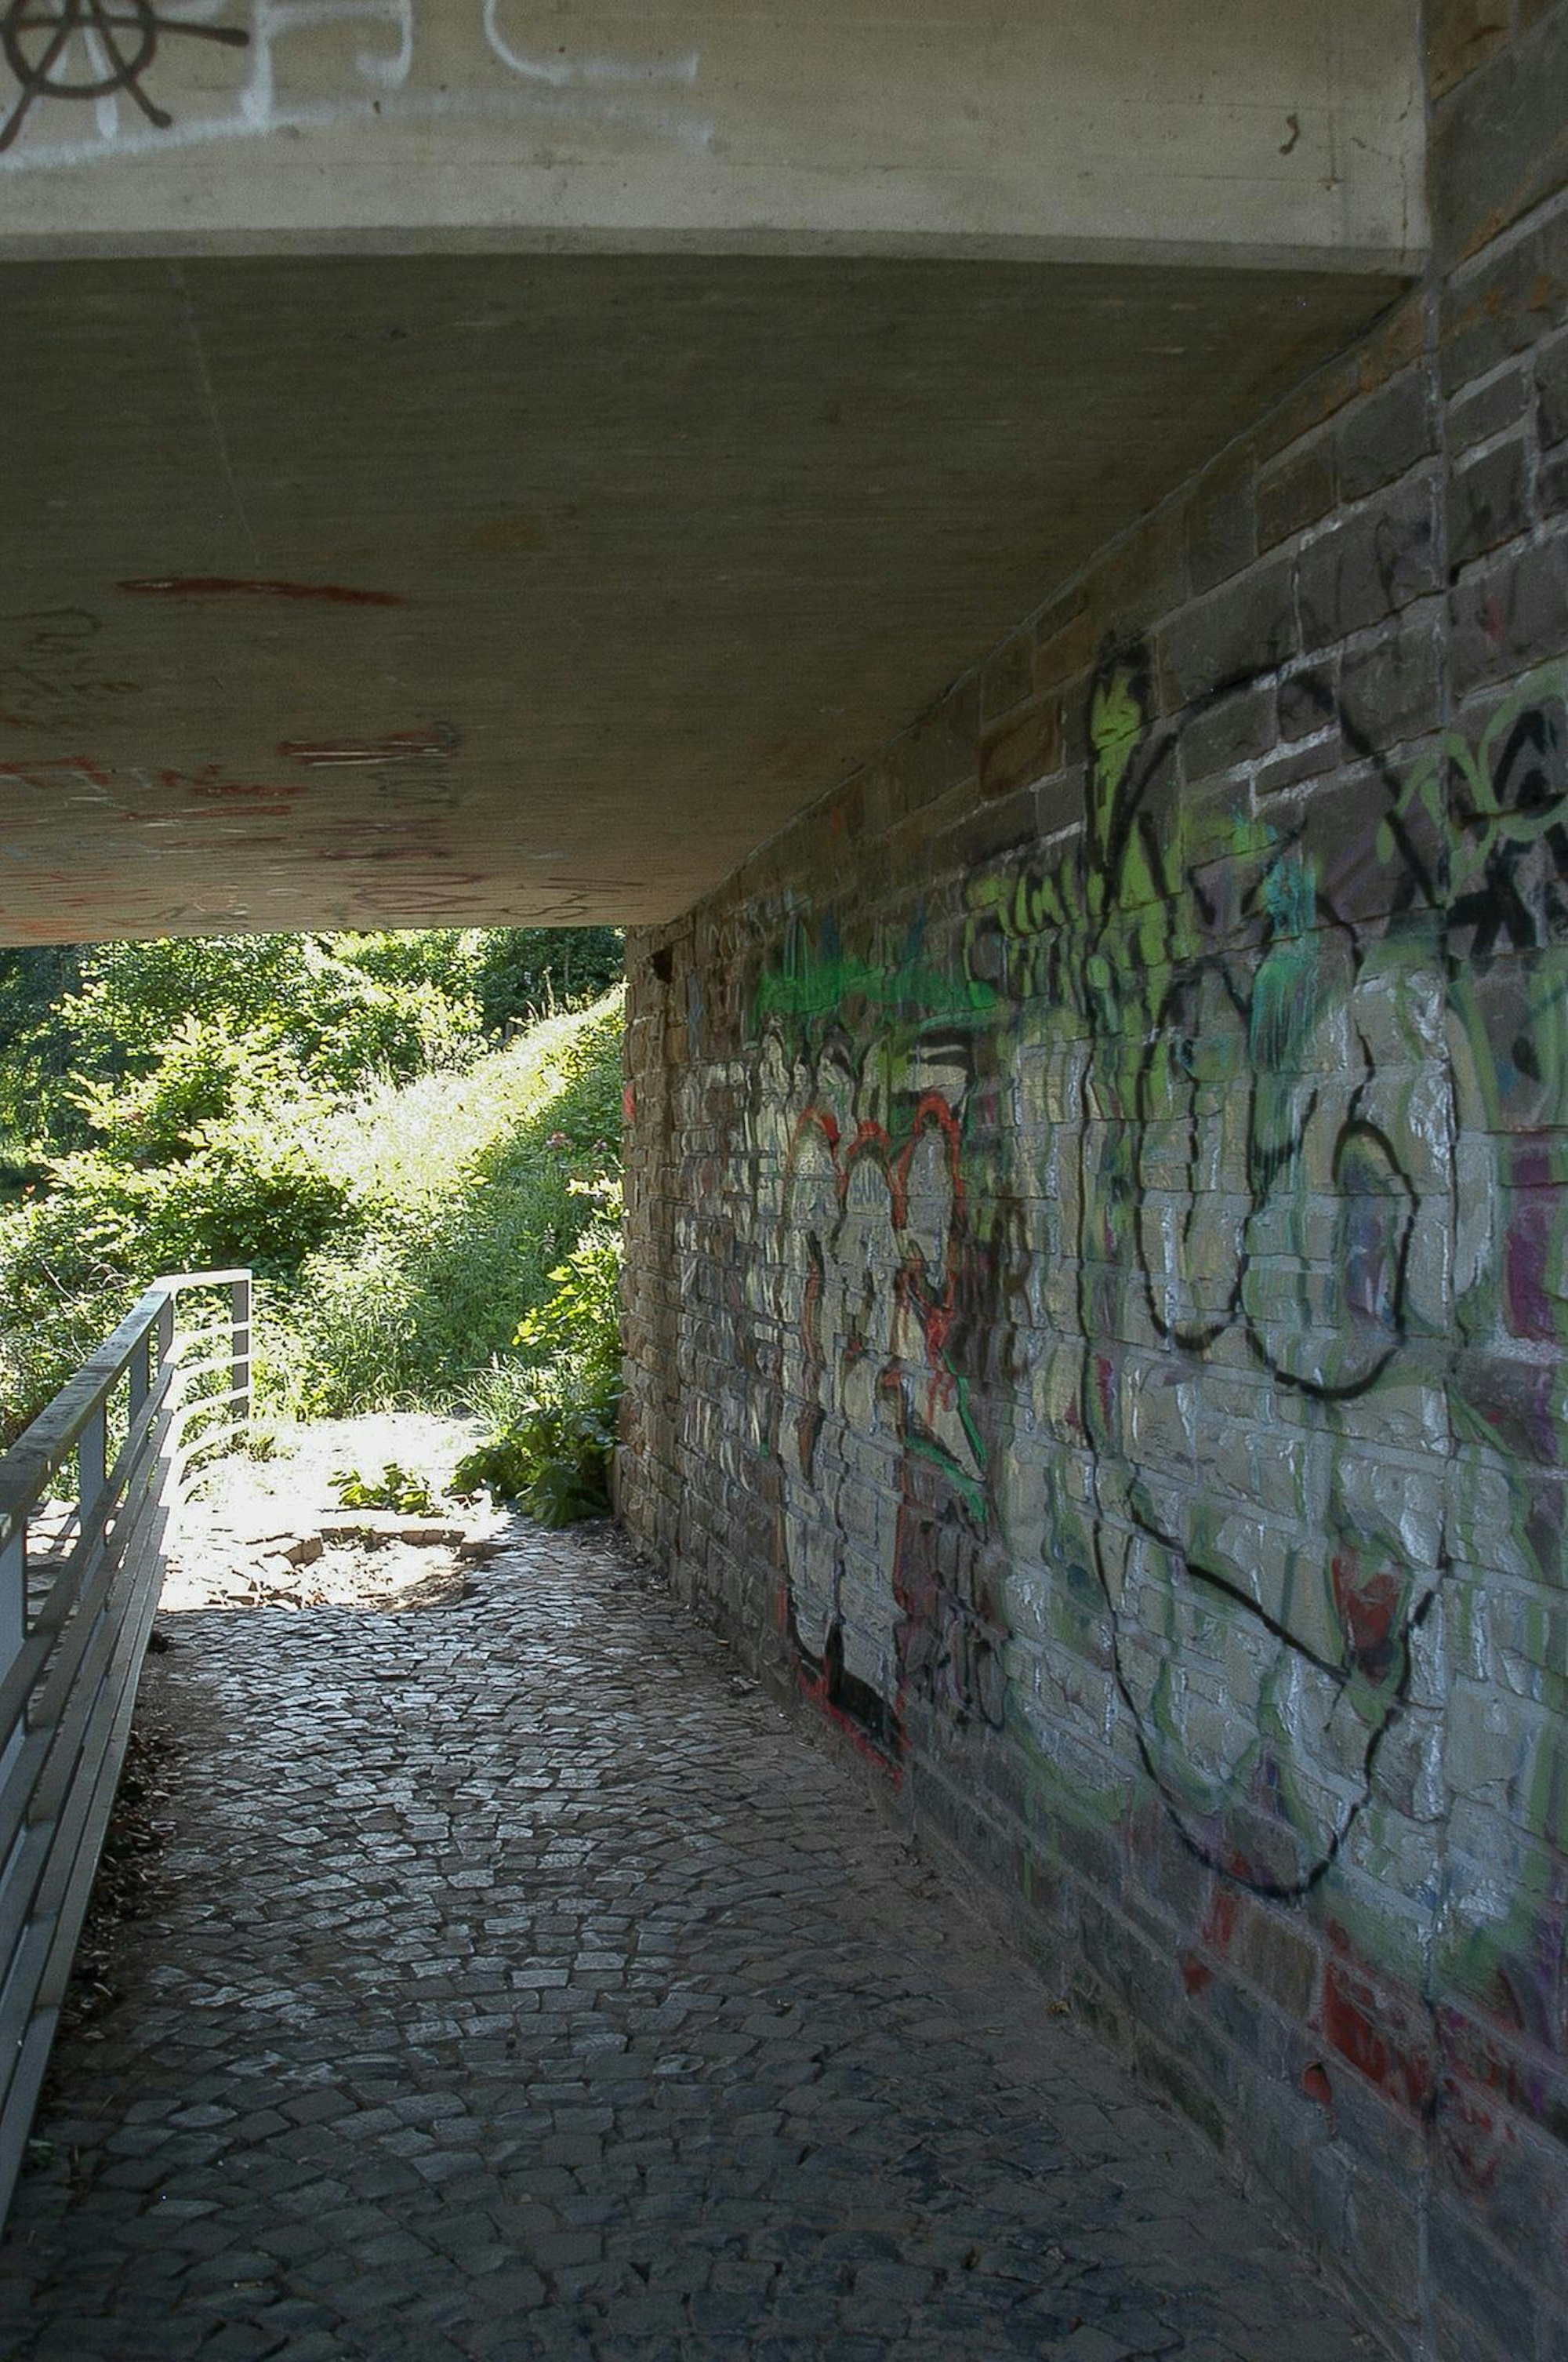 Graffiti erlaubt: Die Brücke an der Nöthener Straße soll offiziell künstlerisch gestaltet werden, damit die Schmierereien aufhören.